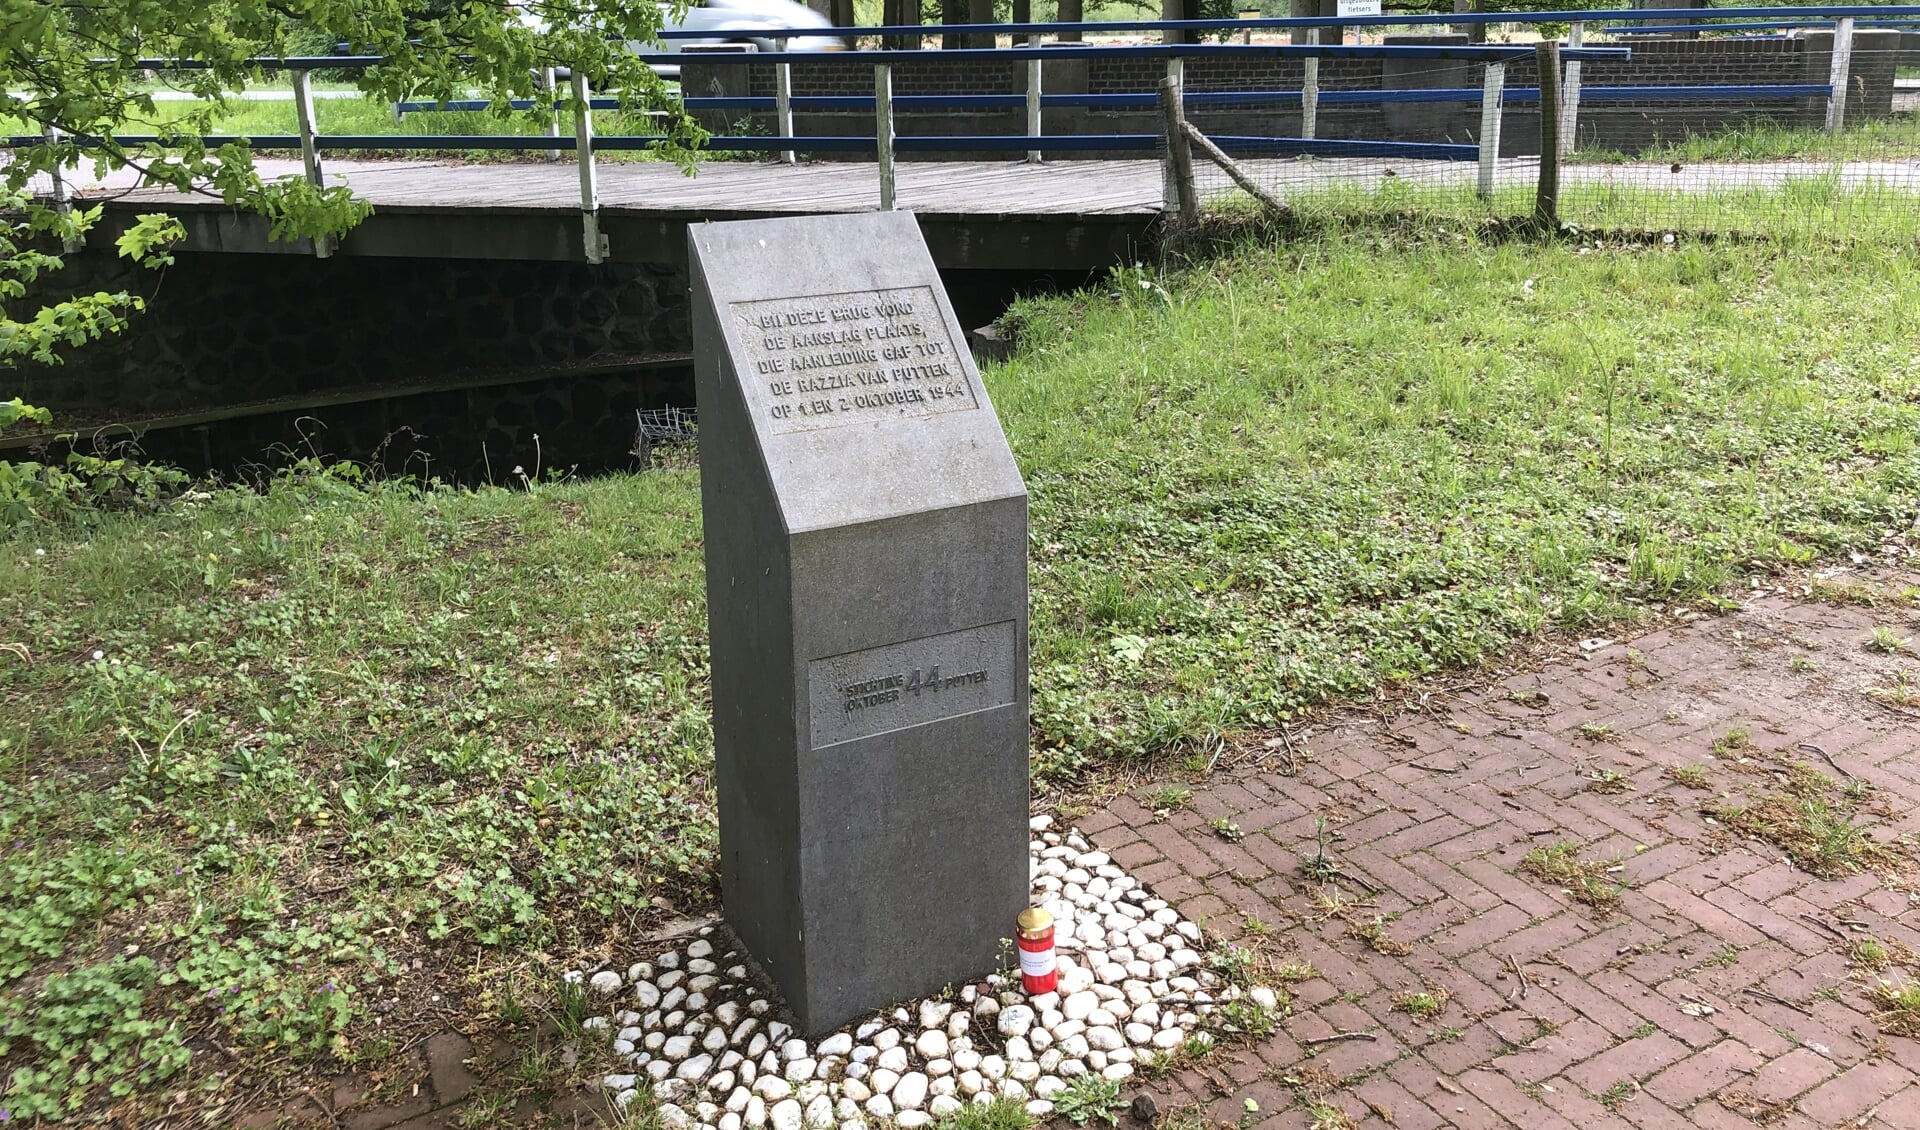 De brug bij Oldenaller speelt een belangrijke rol in de Puttense geschiedenis rond de Tweede Wereldoorlog.